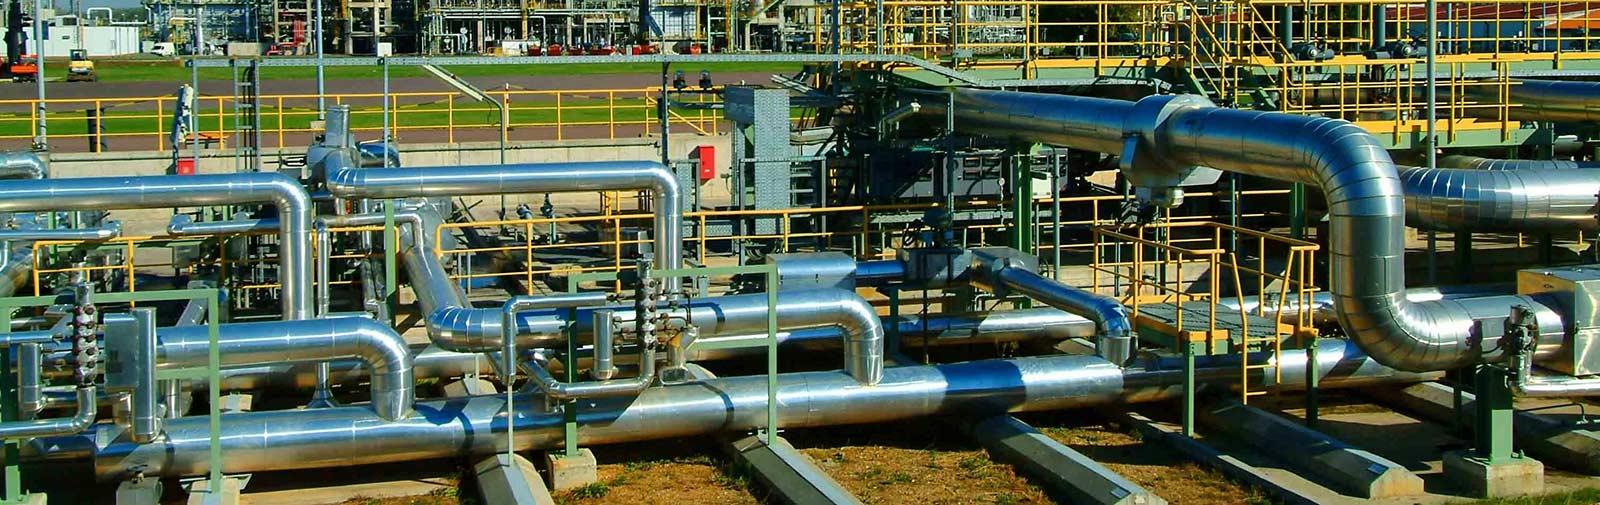 شرکت فراز پترو ساخت جنوب،  مجری پوشش های حرارتی در حوضه نفت گاز